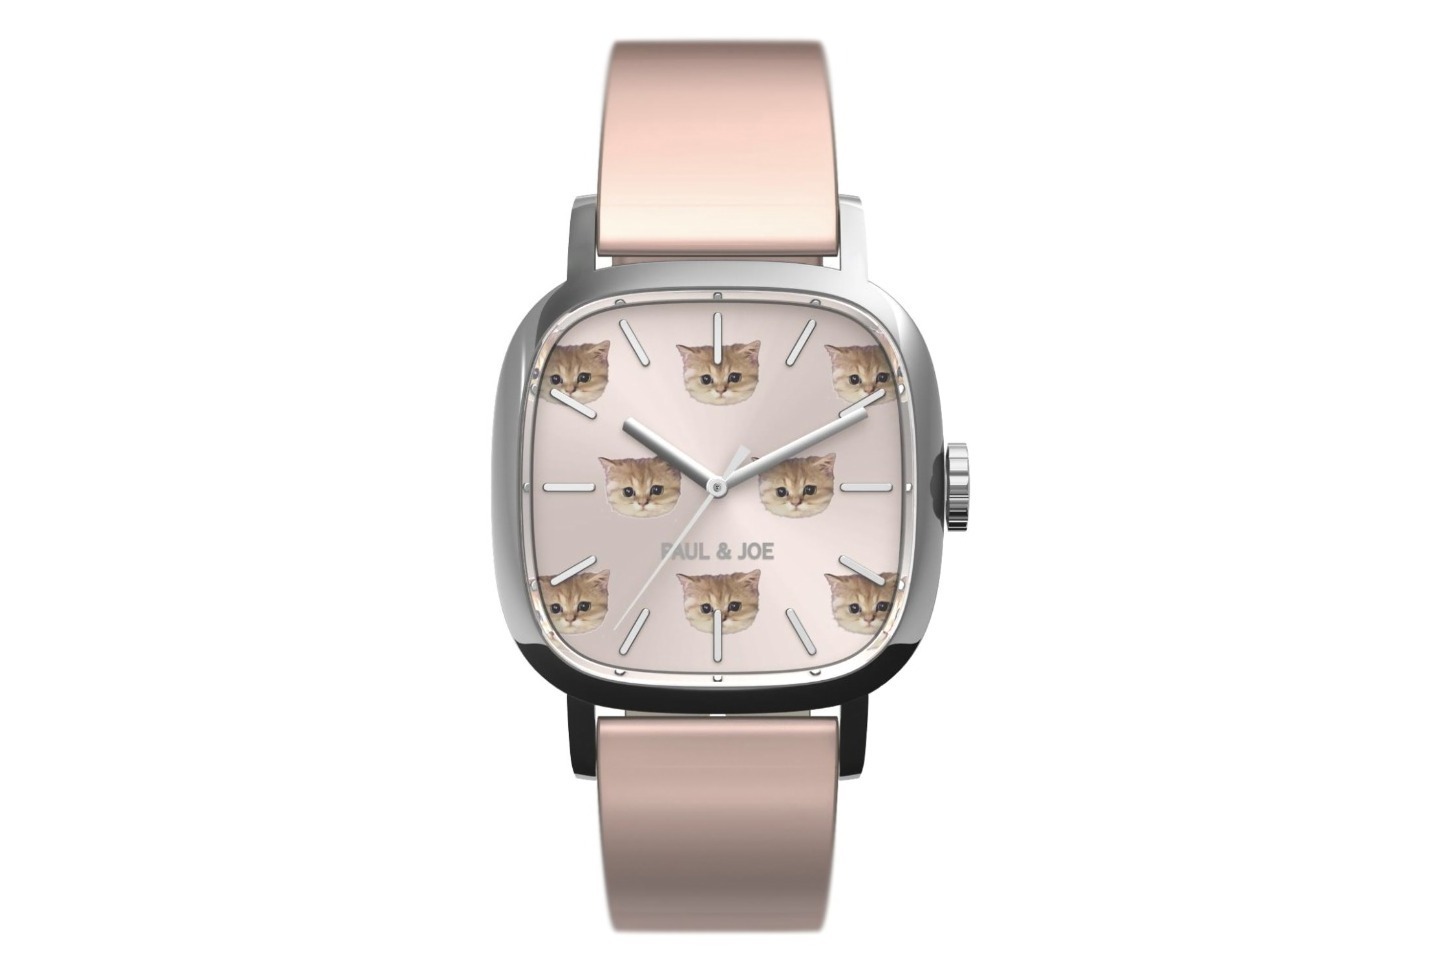 ポール & ジョー“猫”モチーフの限定腕時計「スクエア ヌネット」猫の顔